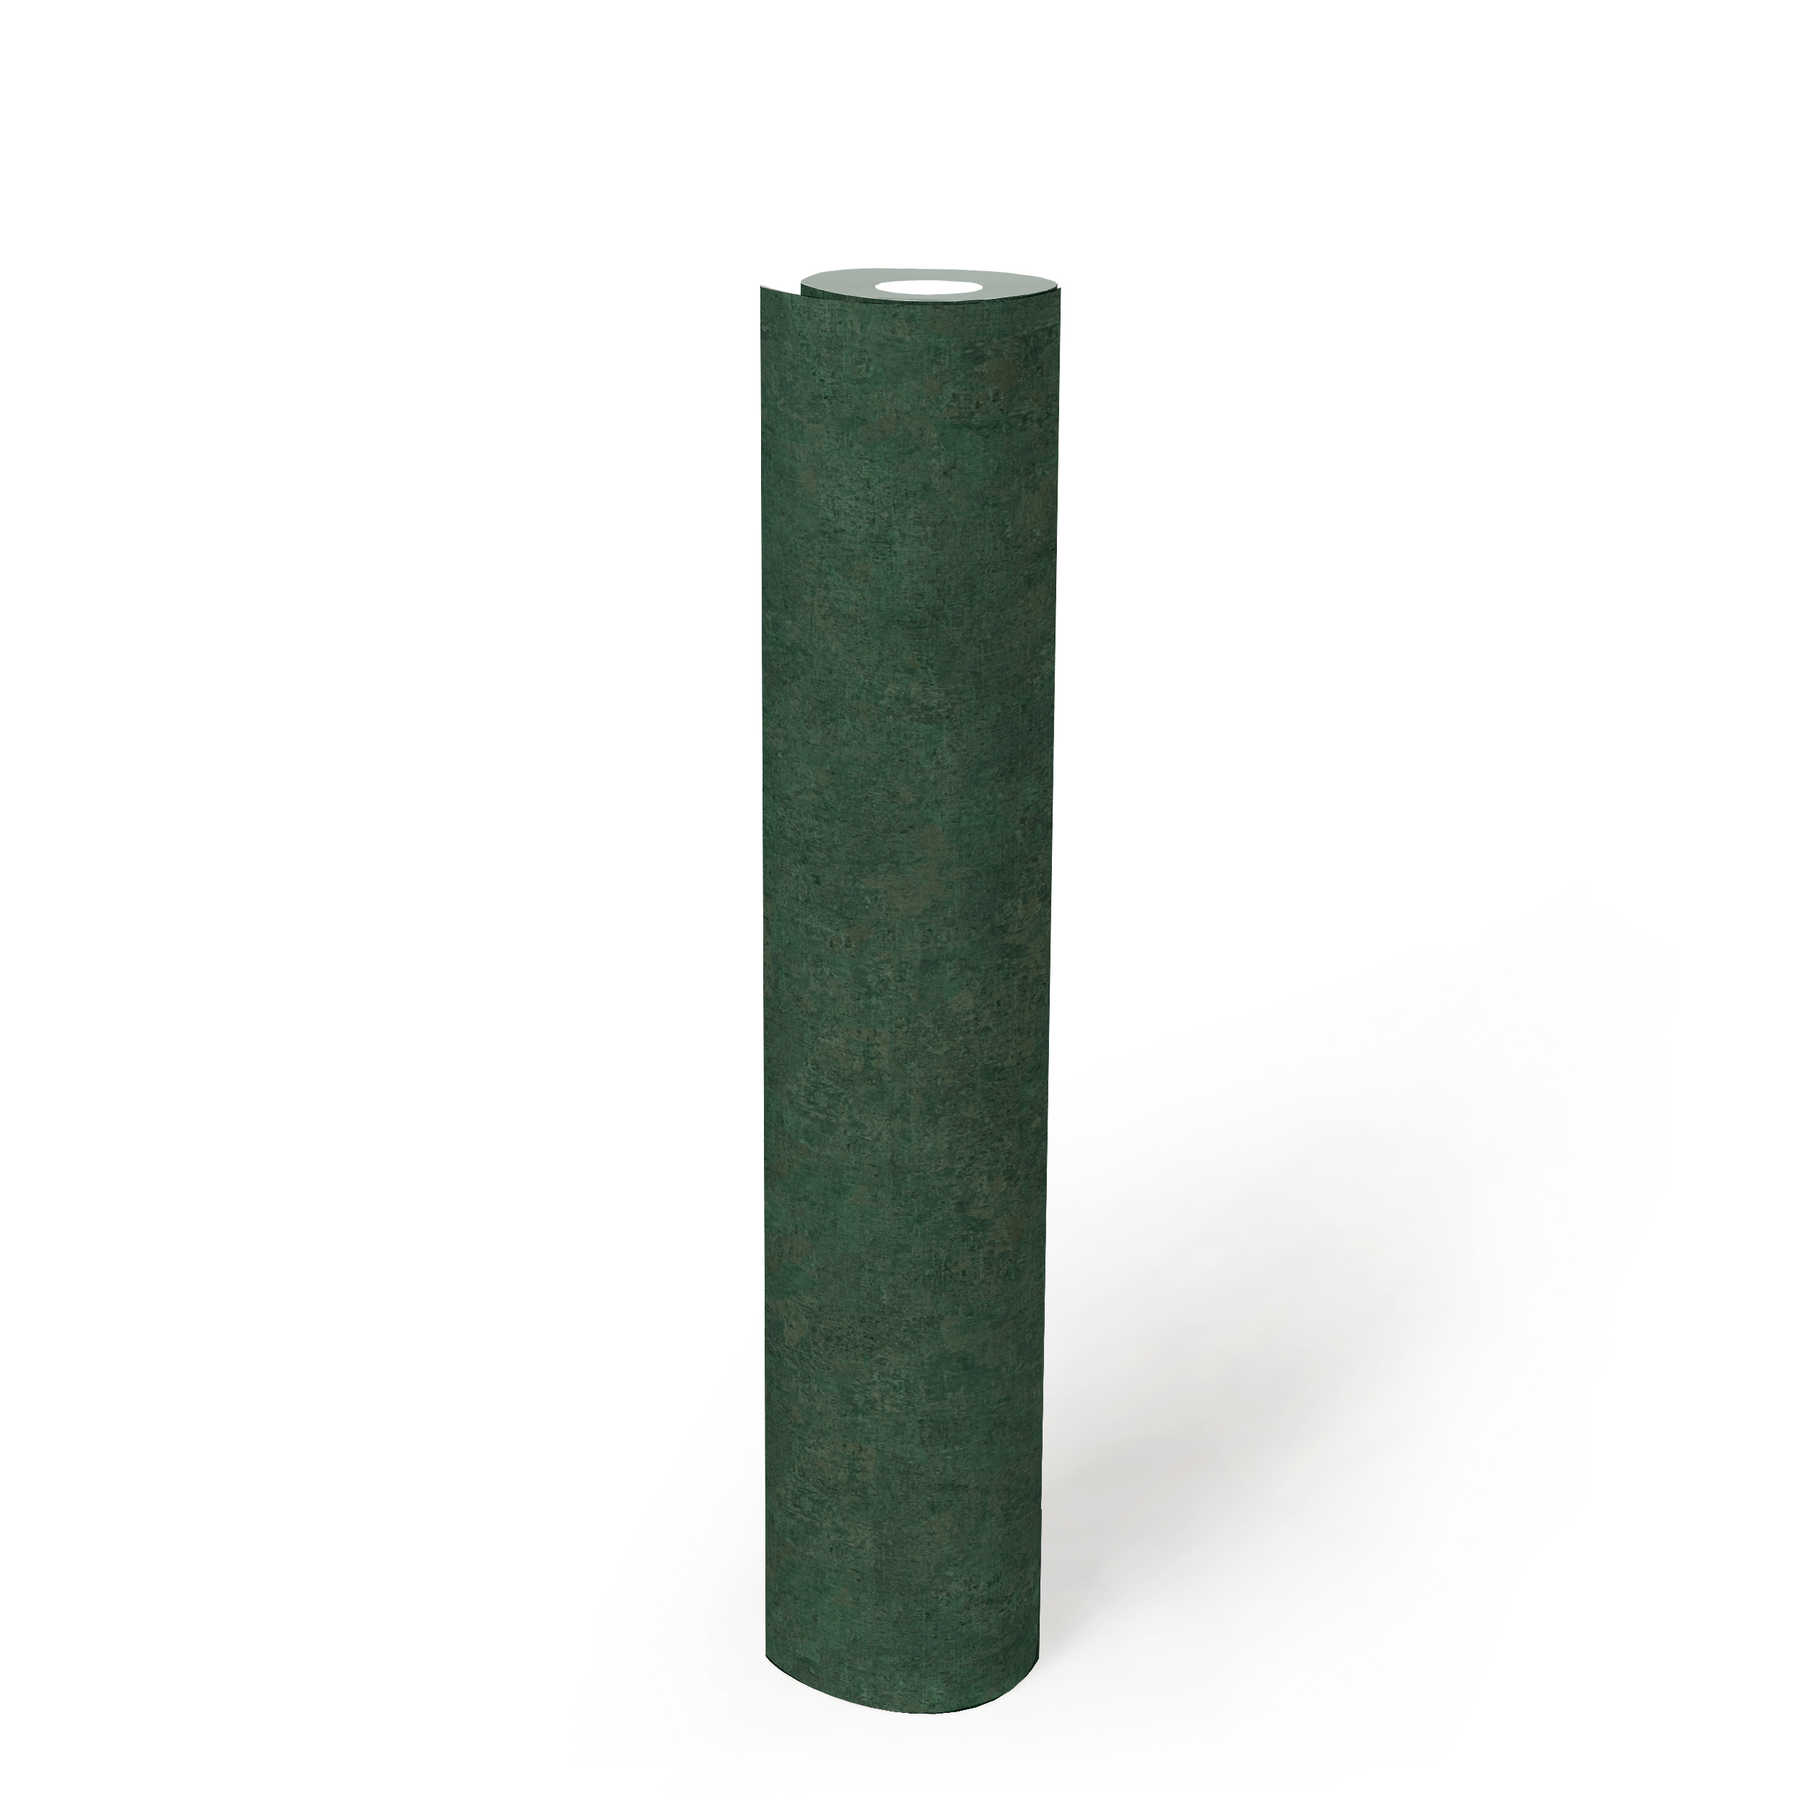             Papier peint intissé uni, motifs colorés & look vintage - Vert
        